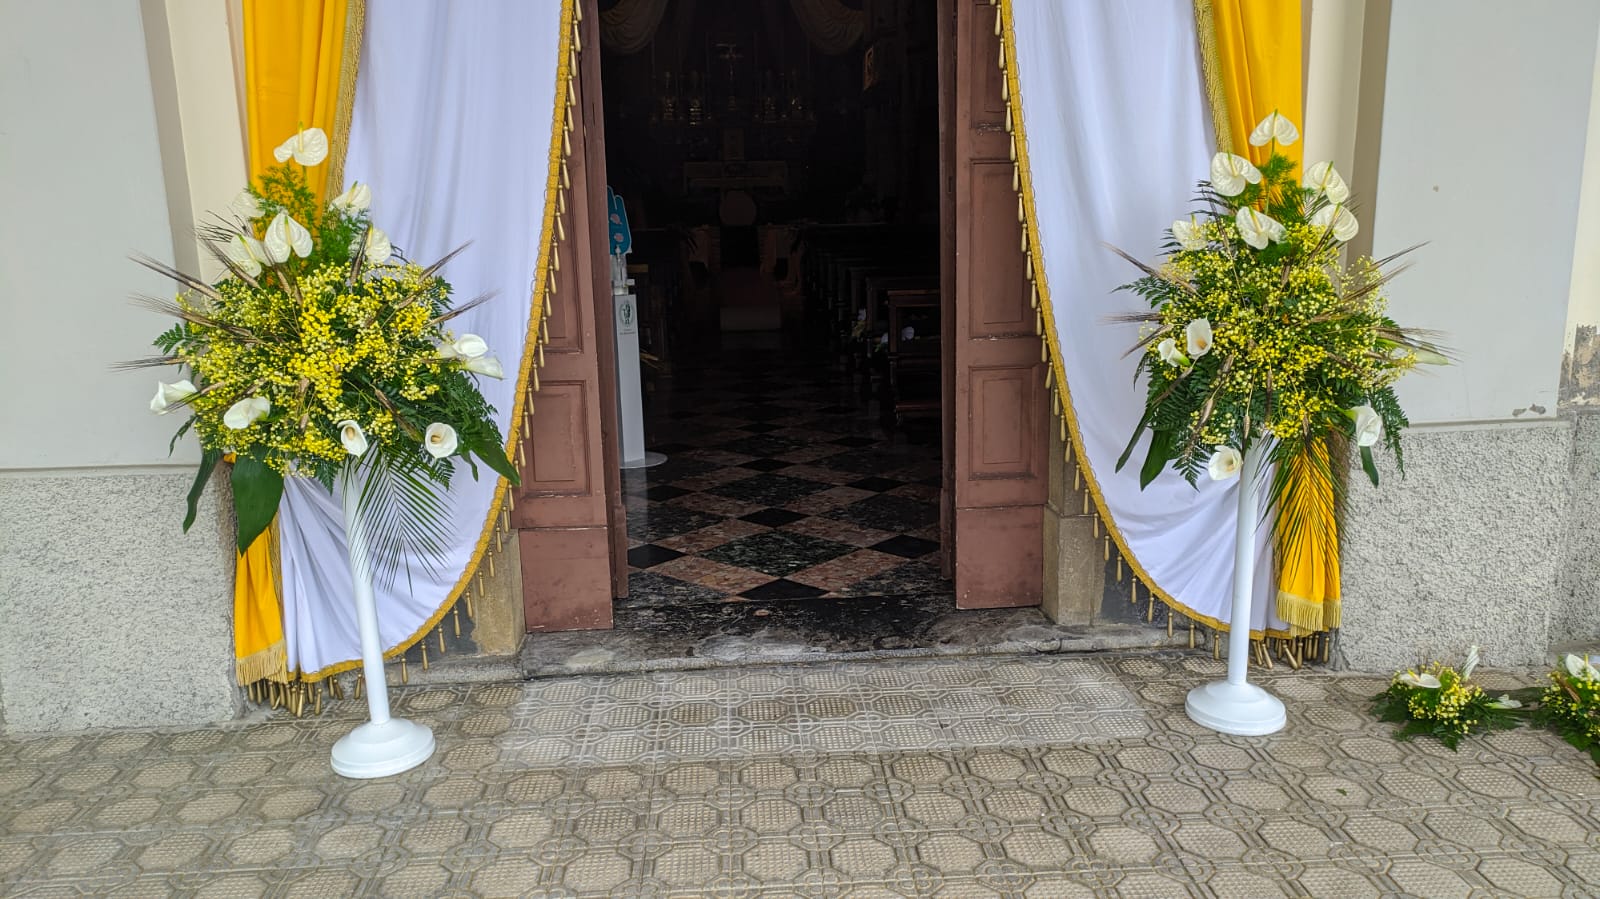 Cestini composizioni florali con calle bianche e mimosa su piedistalli bianci all'ingresso di una chiesa